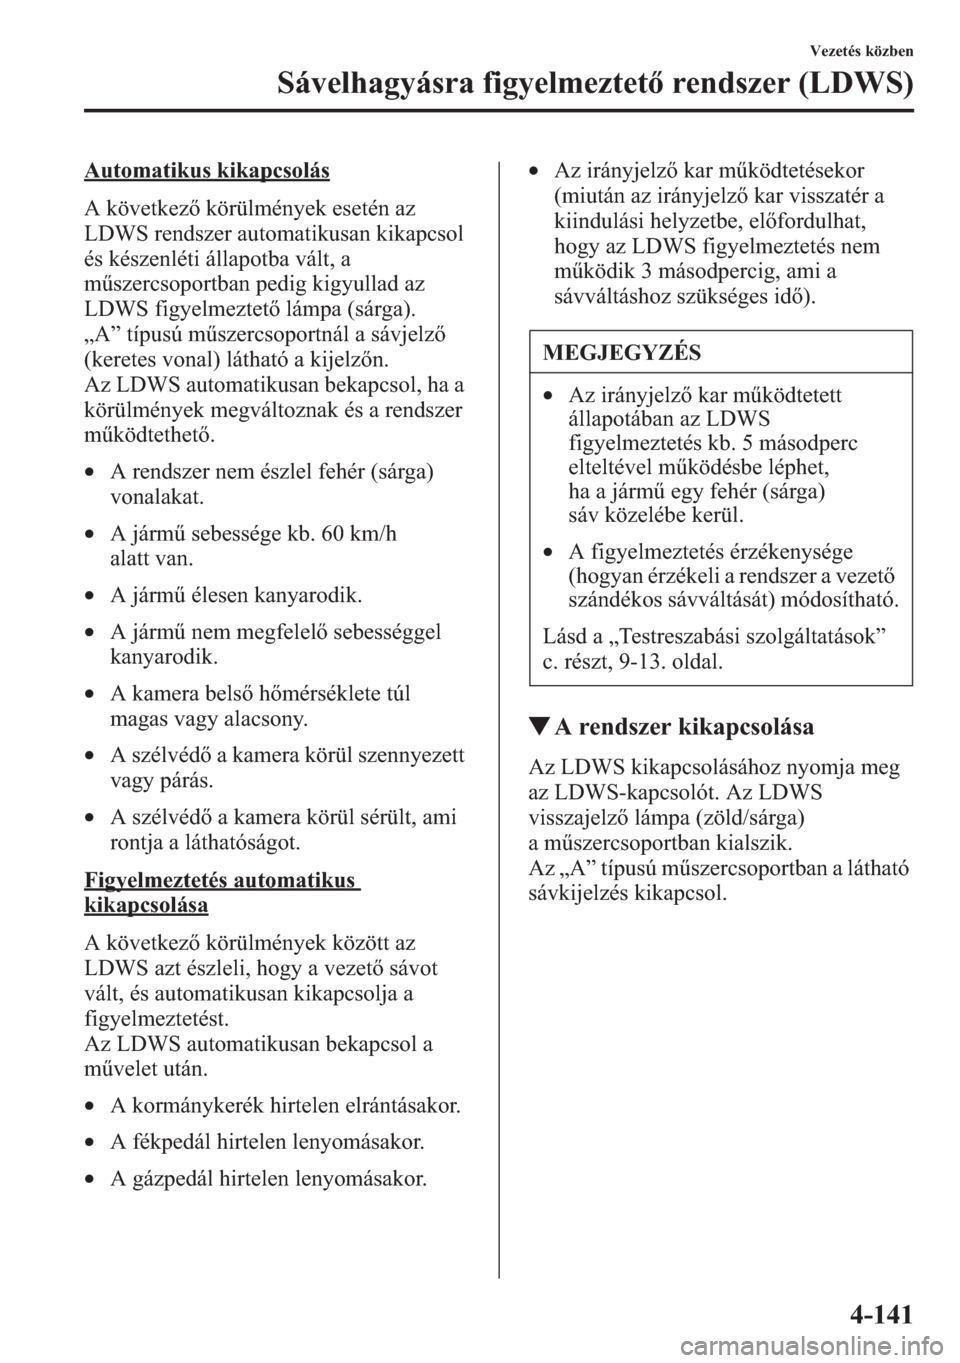 MAZDA MODEL CX-5 2013  Kezelési útmutató (in Hungarian) 4-141
Vezetés közben
Sávelhagyásra figyelmeztet rendszer (LDWS)
Automatikus kikapcsolás
A következ körülmények esetén az 
LDWS rendszer automatikusan kikapcsol 
és készenléti állapotba